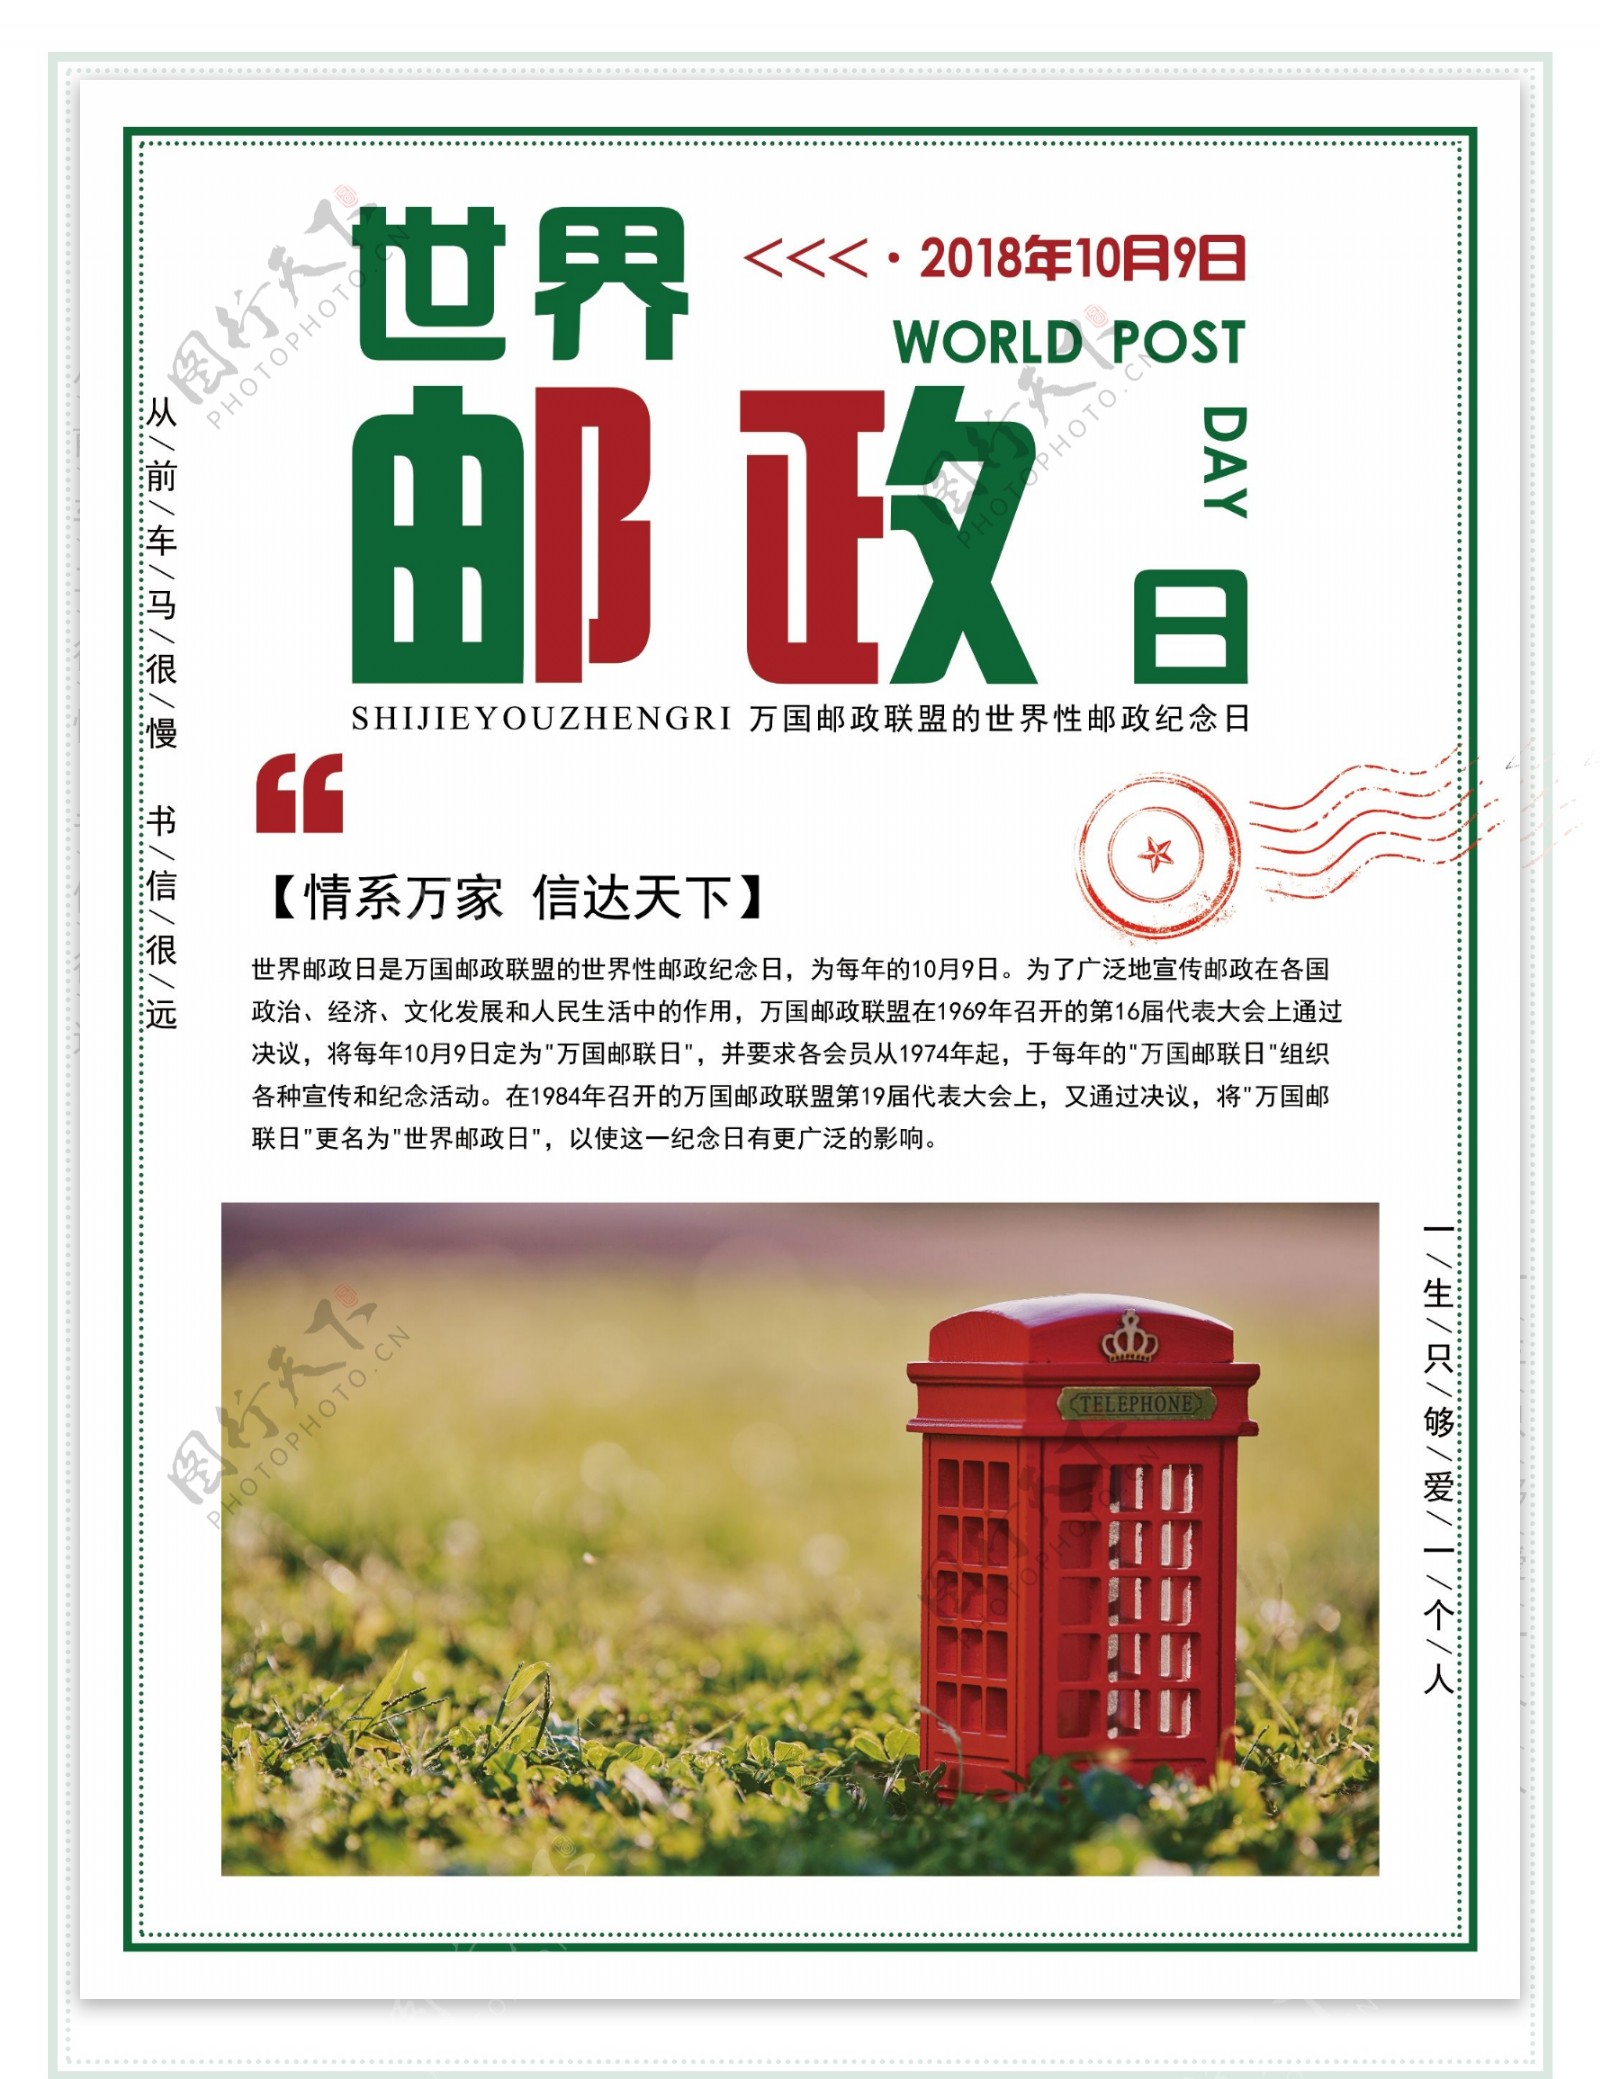 世界邮政日节日海报设计